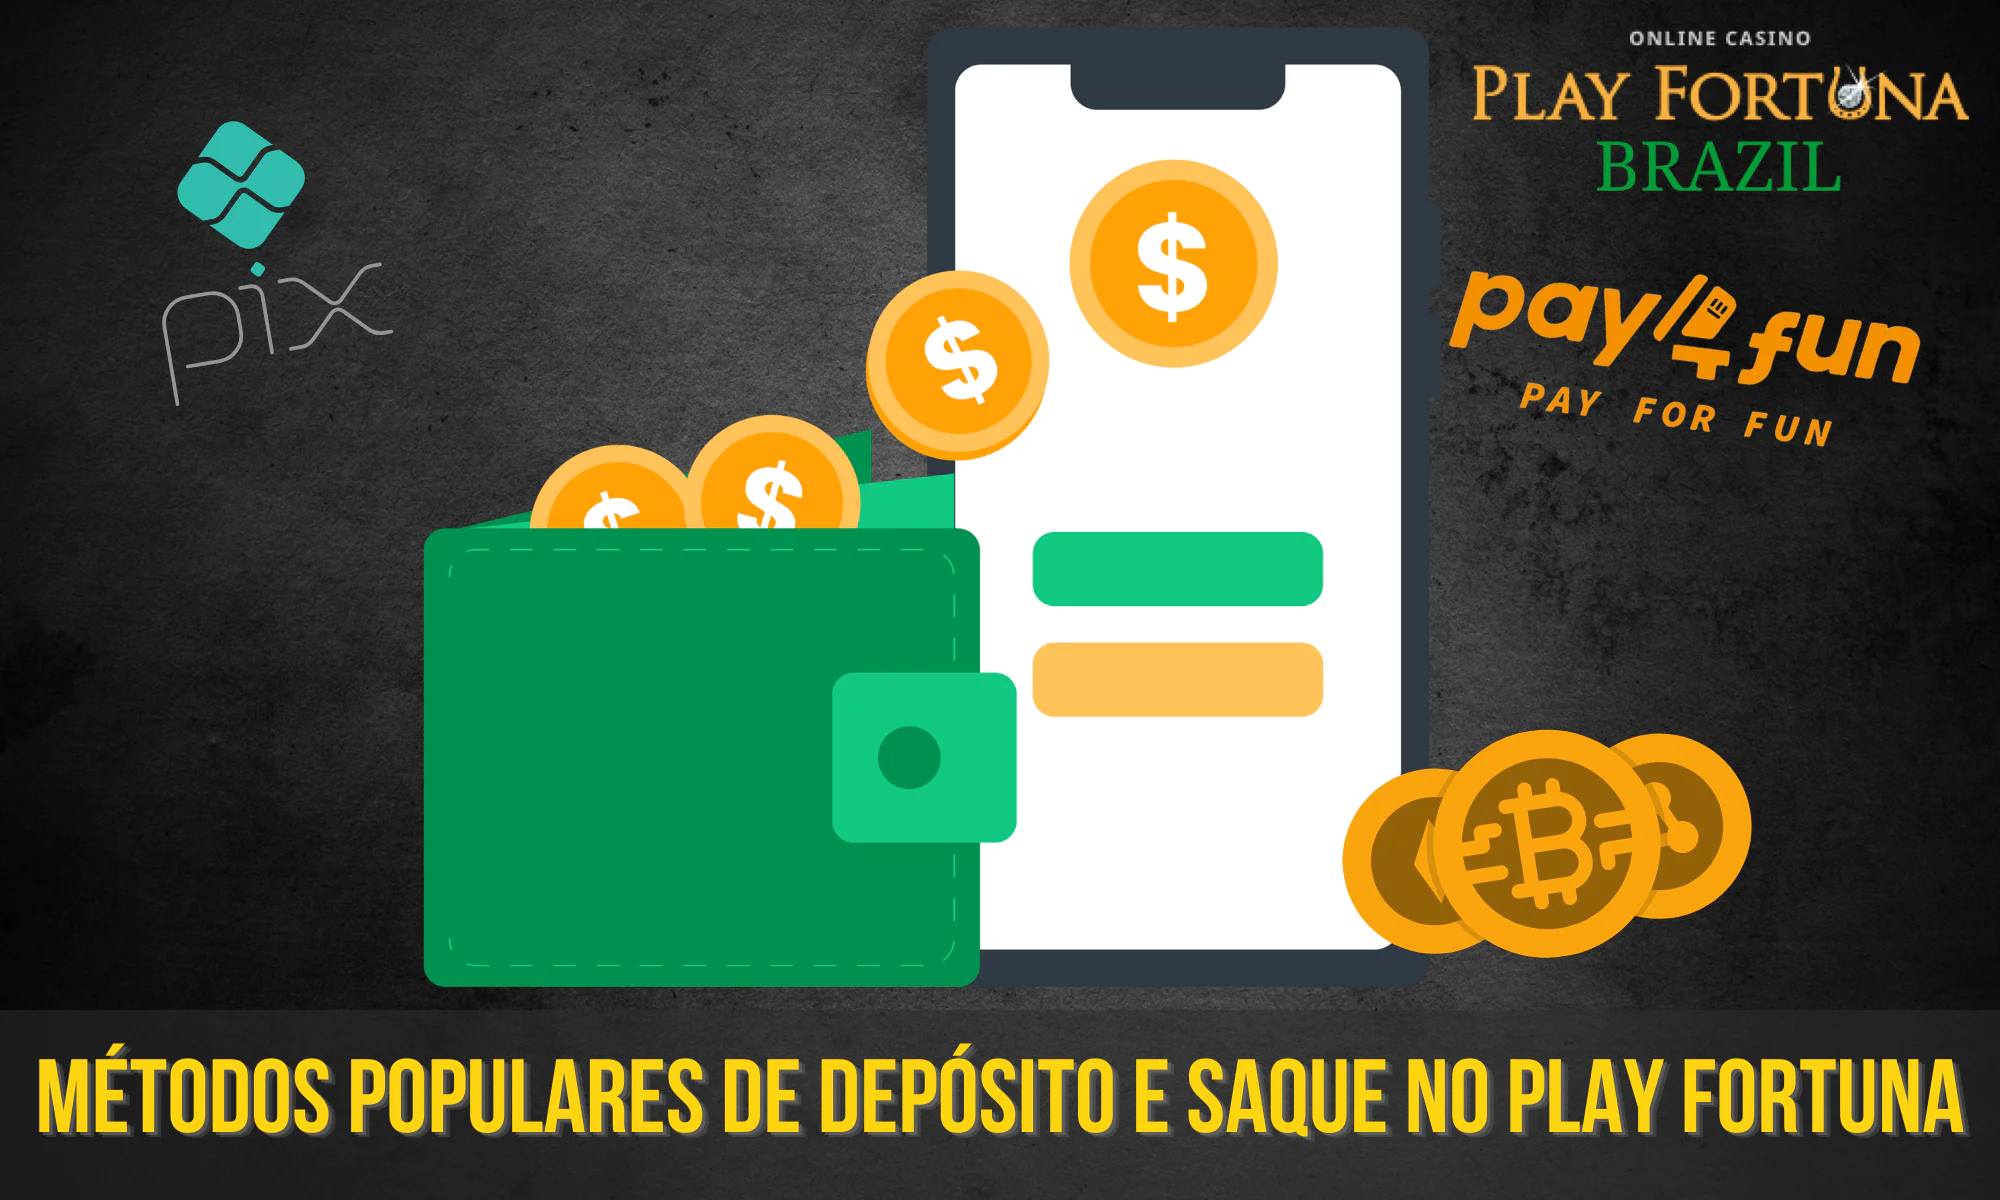 O Play Fortuna permite que os brasileiros depositem e retirem dinheiro usando pagamentos populares no país